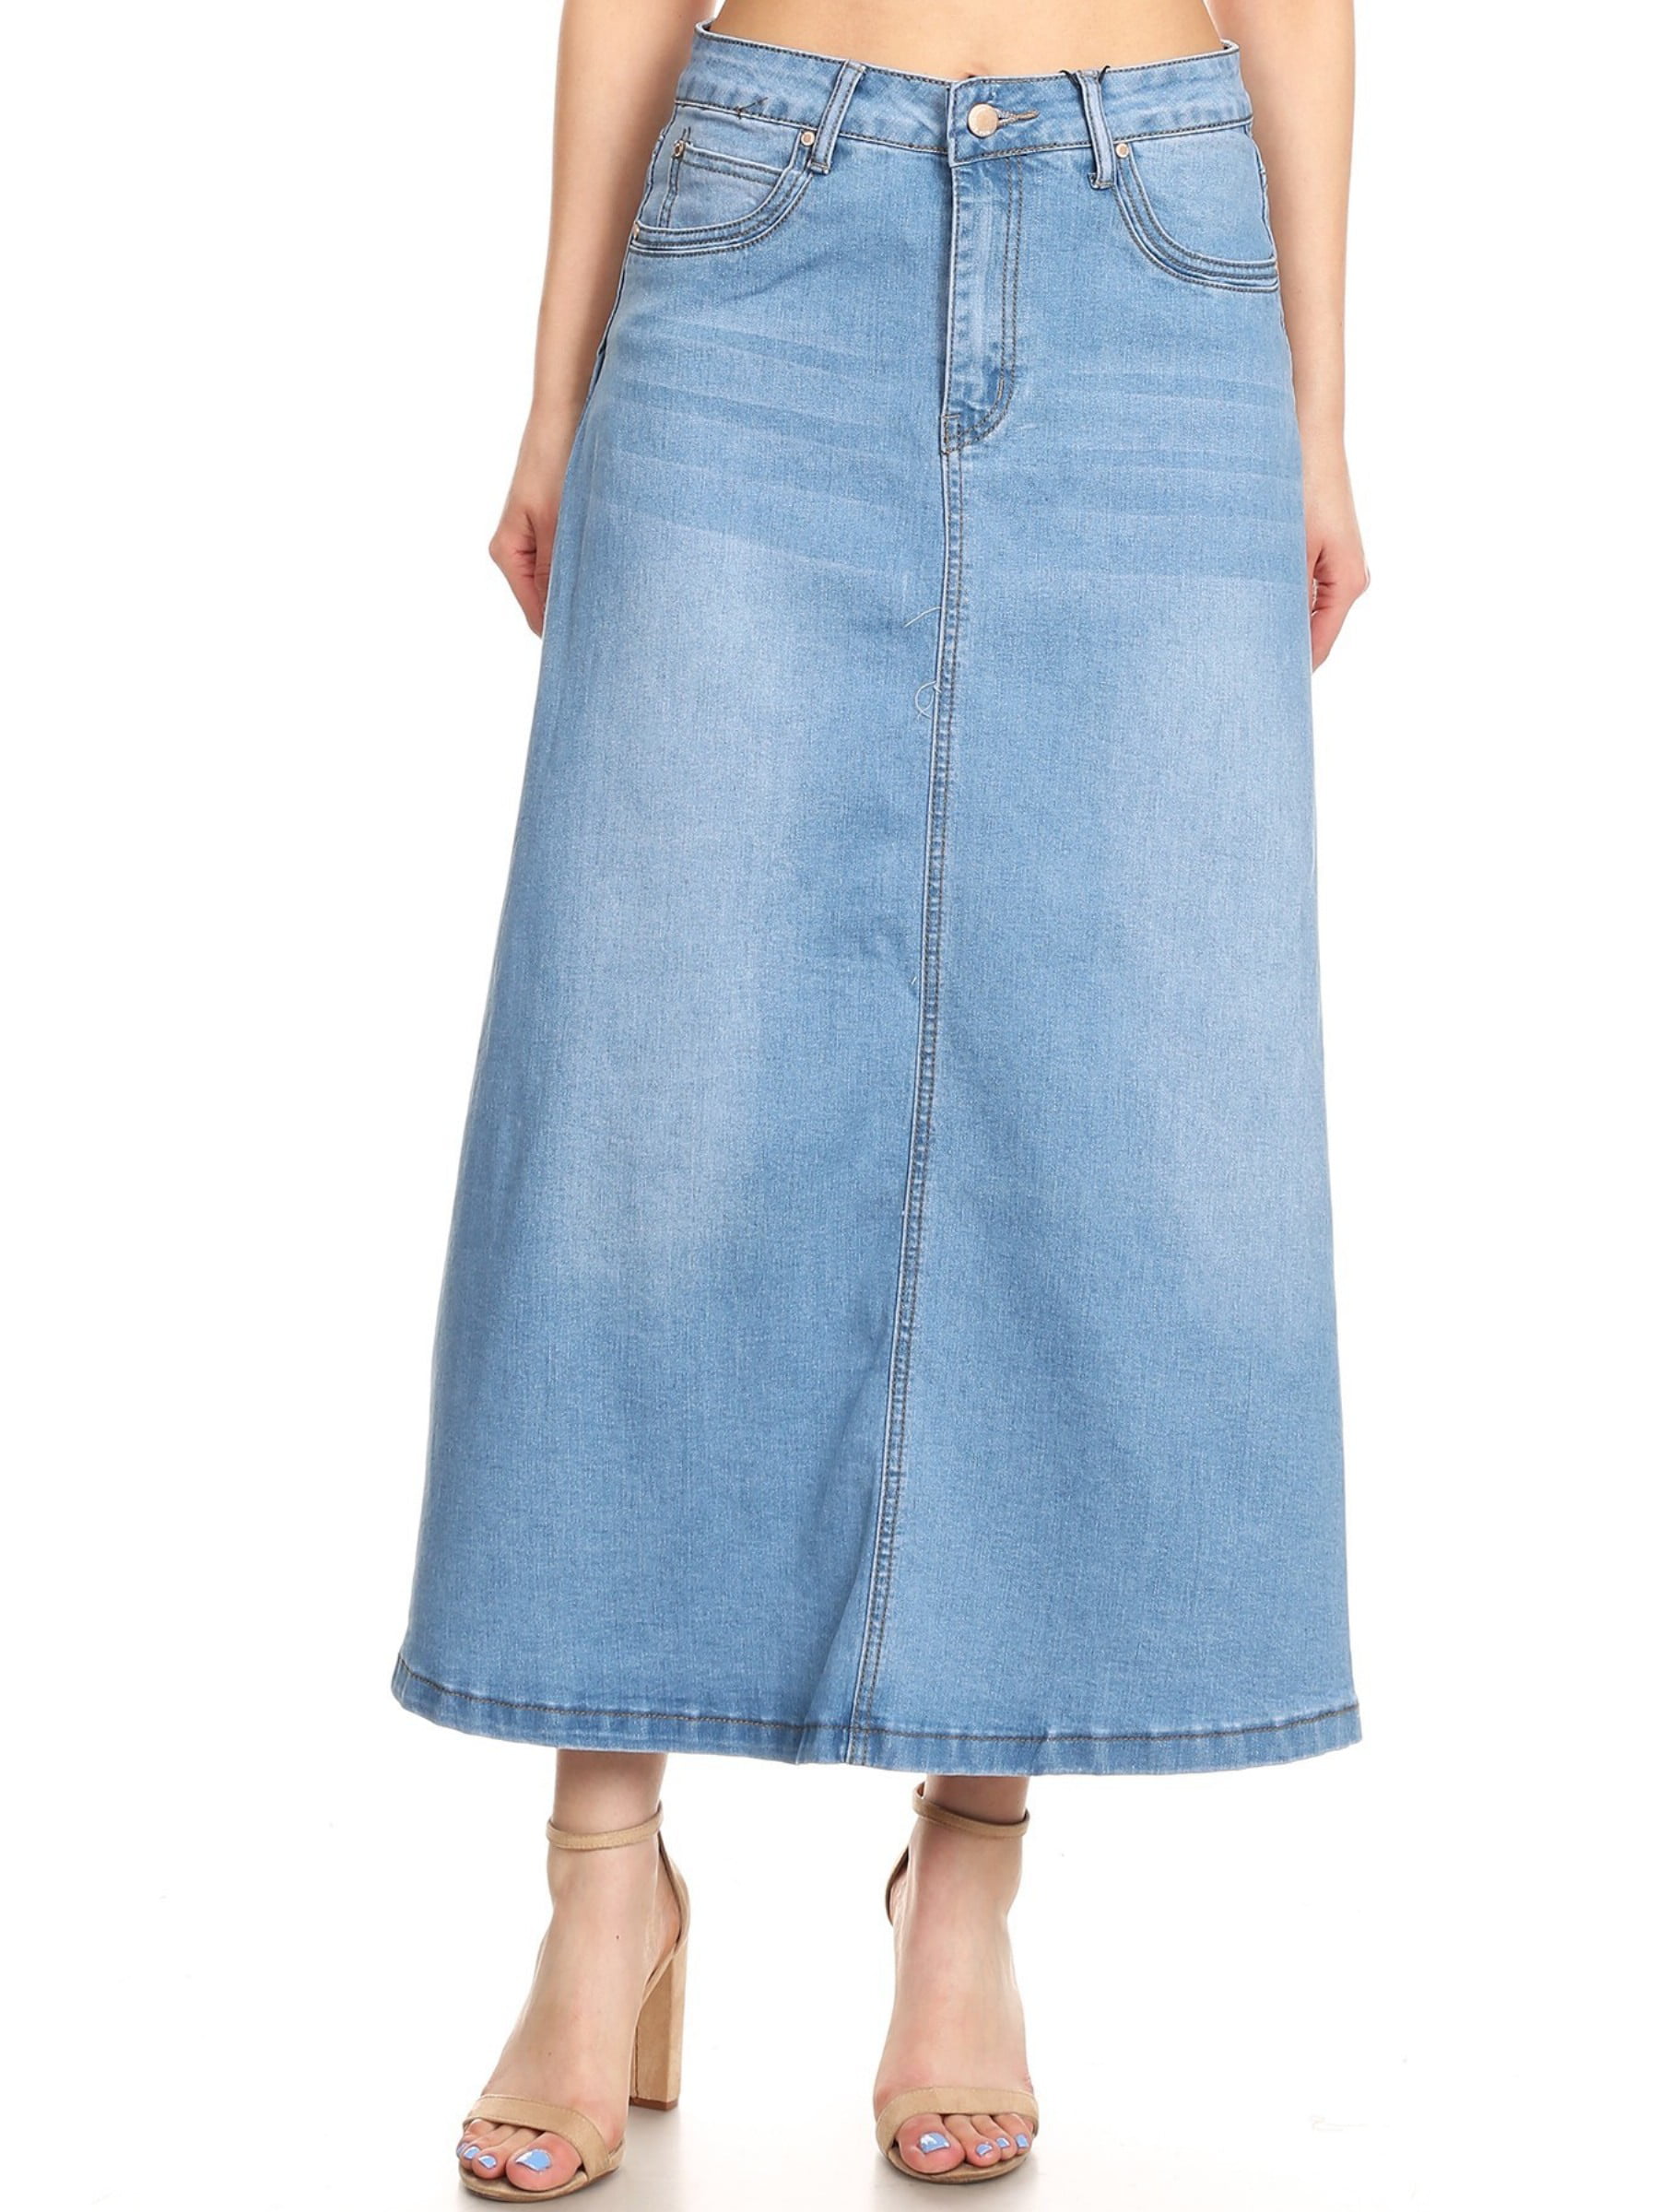 Long Jeans Maxi Denim Skirt | Walmart 